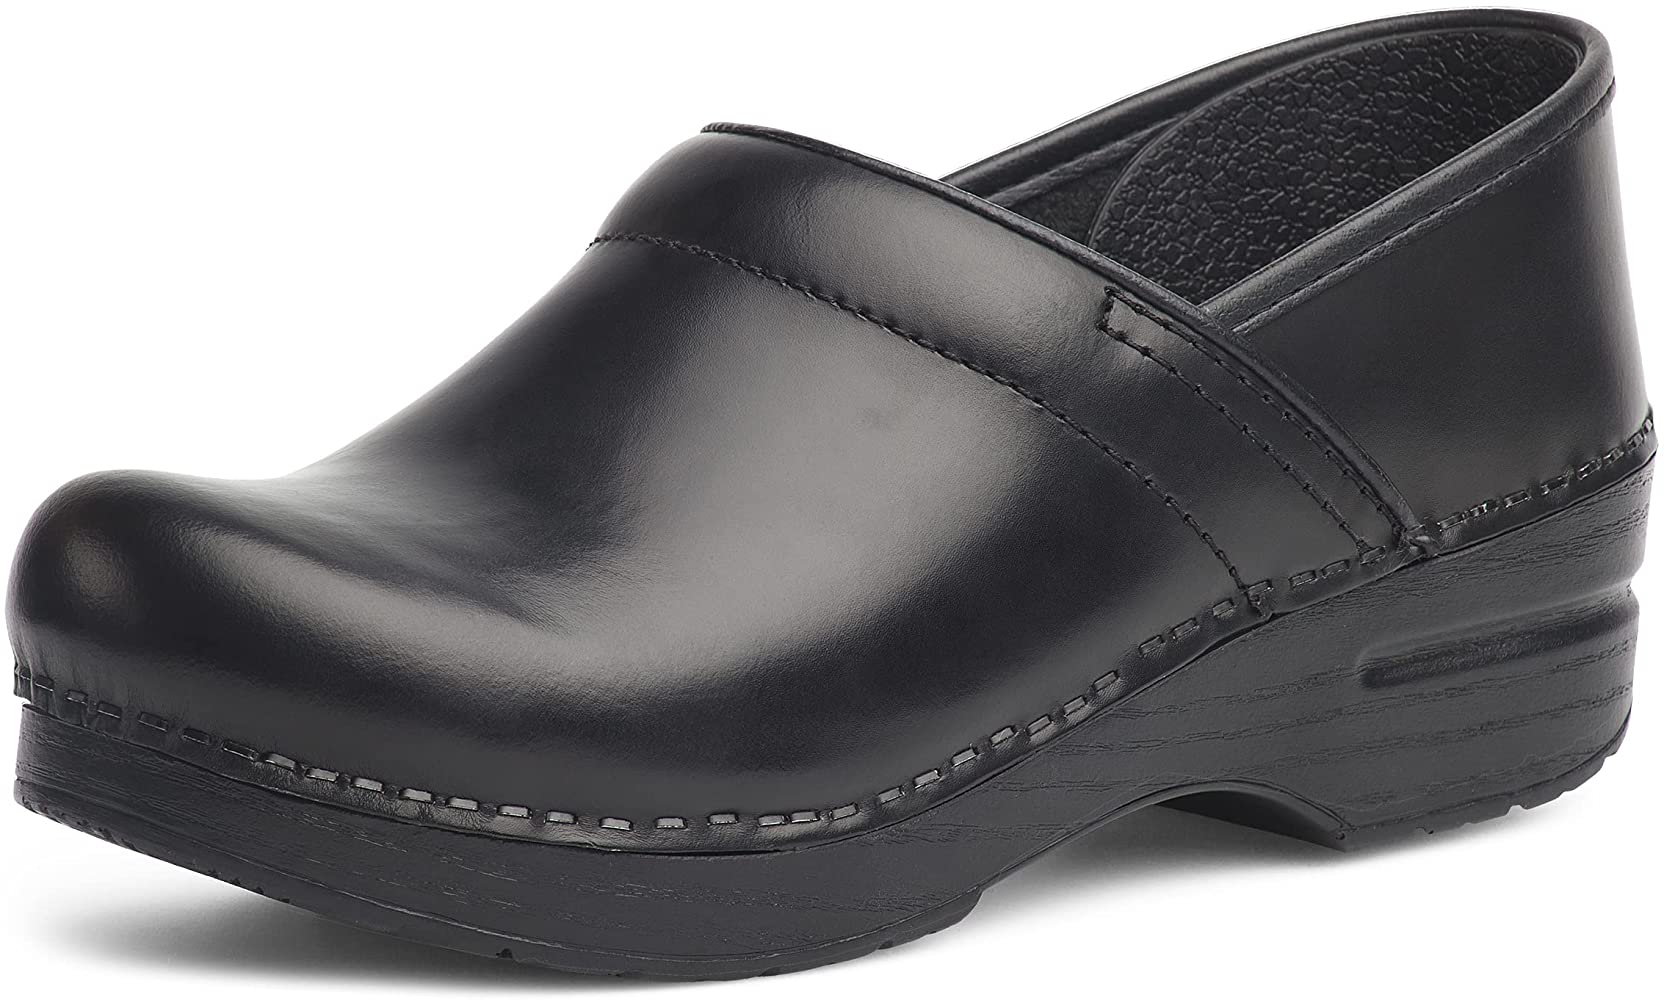 Señora Clogs lederclogs sandalias confort zapatos cuero auténtico talla 36-41 blanco 